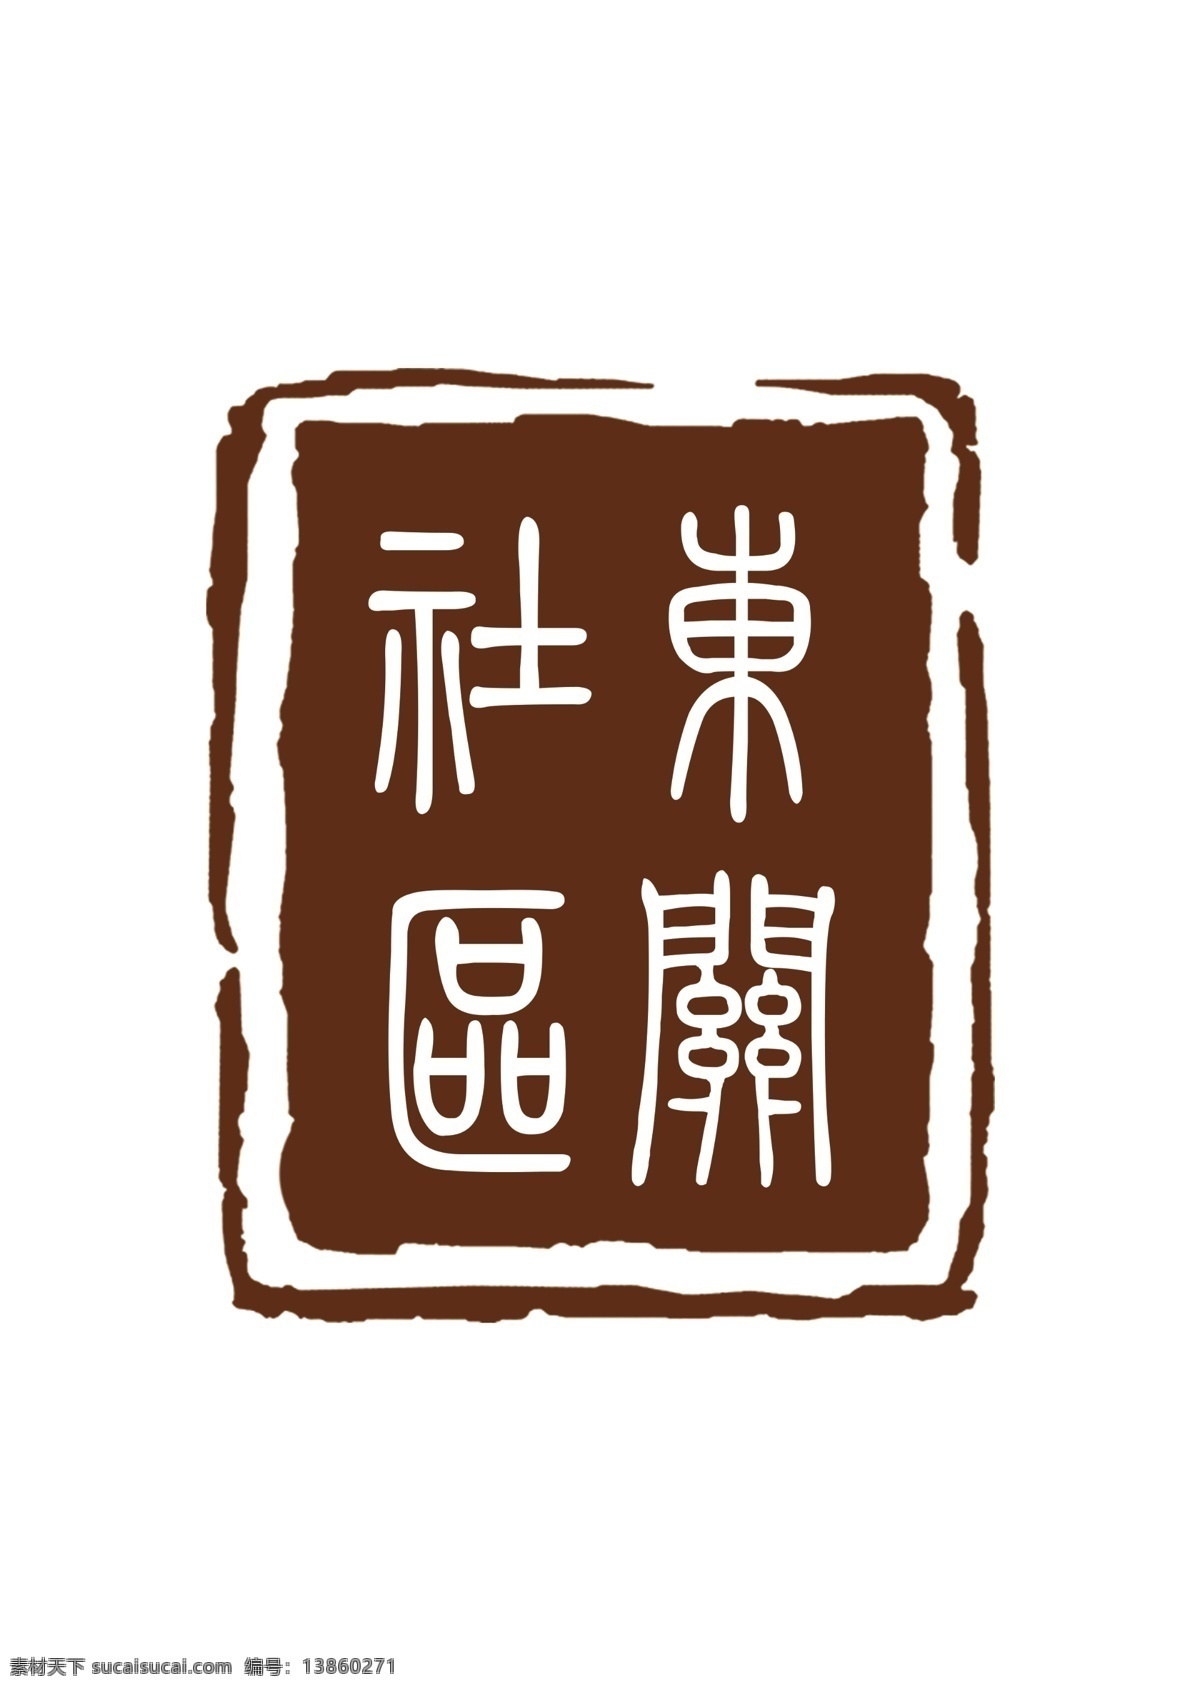 西关 社区 logo 西关社区 标志 印章 篆字 篆书 模板 logo设计